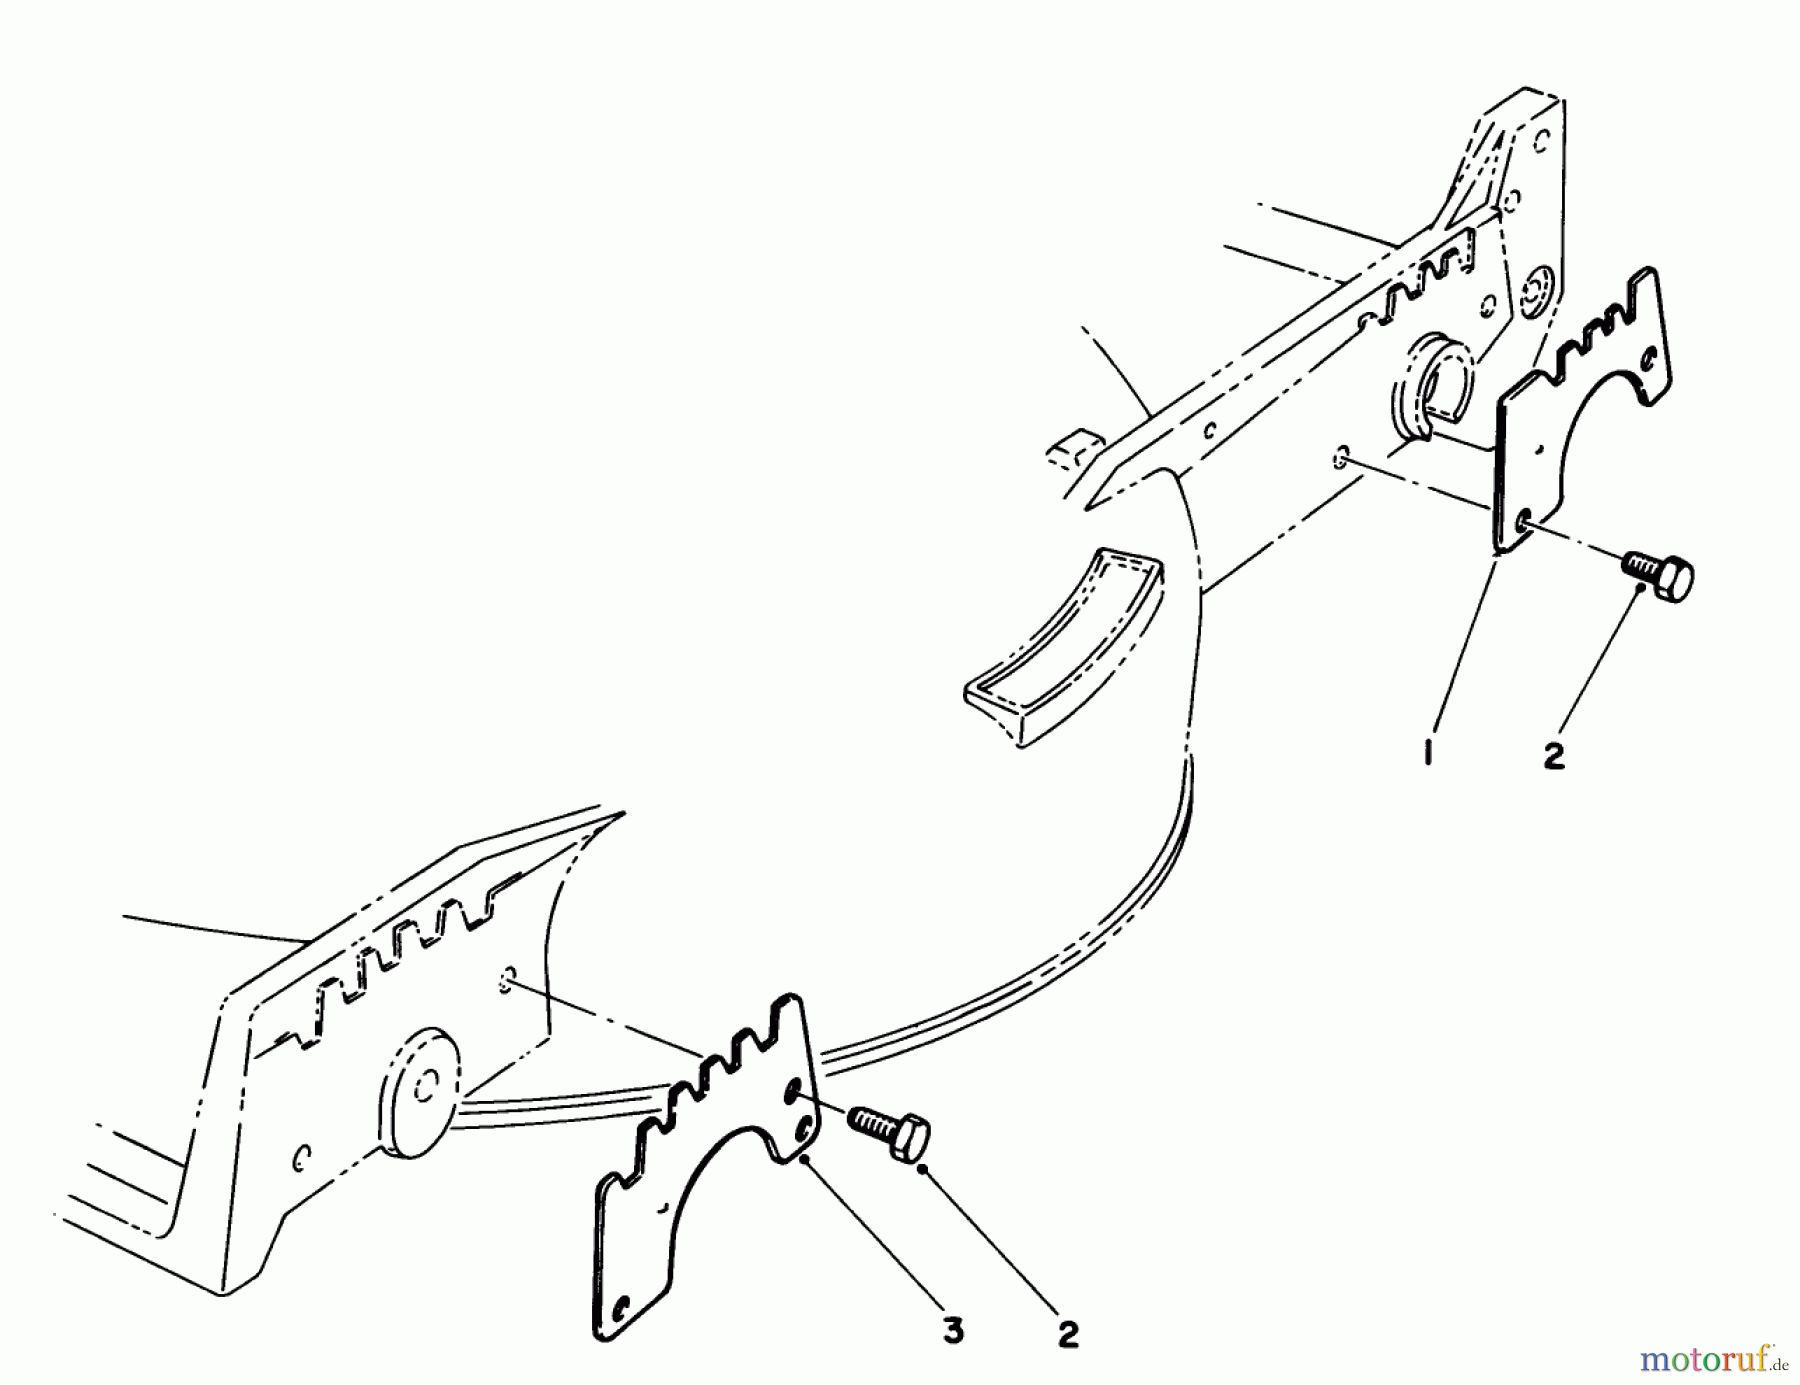  Toro Neu Mowers, Walk-Behind Seite 1 20622 - Toro Lawnmower, 1987 (7000001-7999999) WEAR PLATE KIT NO. 49-4080 (OPTIONAL)